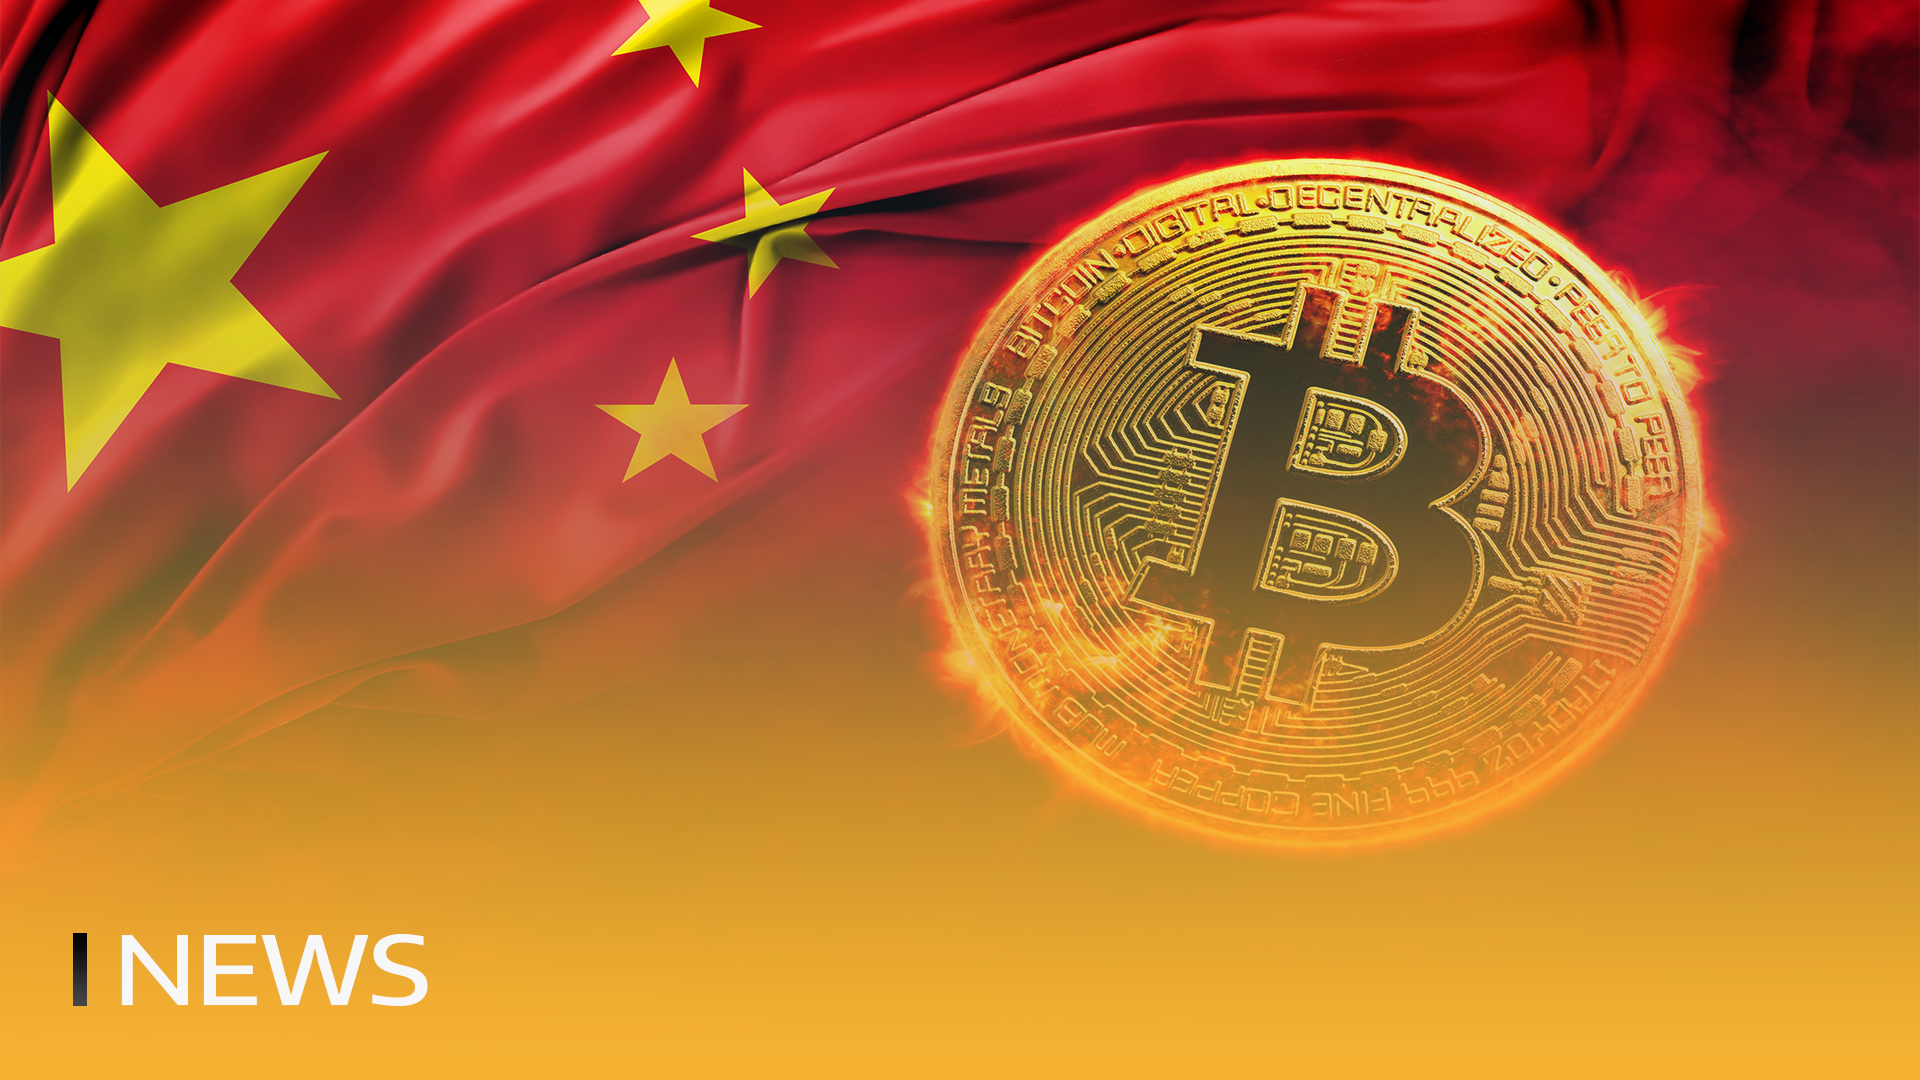 La crypto-monnaie se développe en Chine contre toute attente